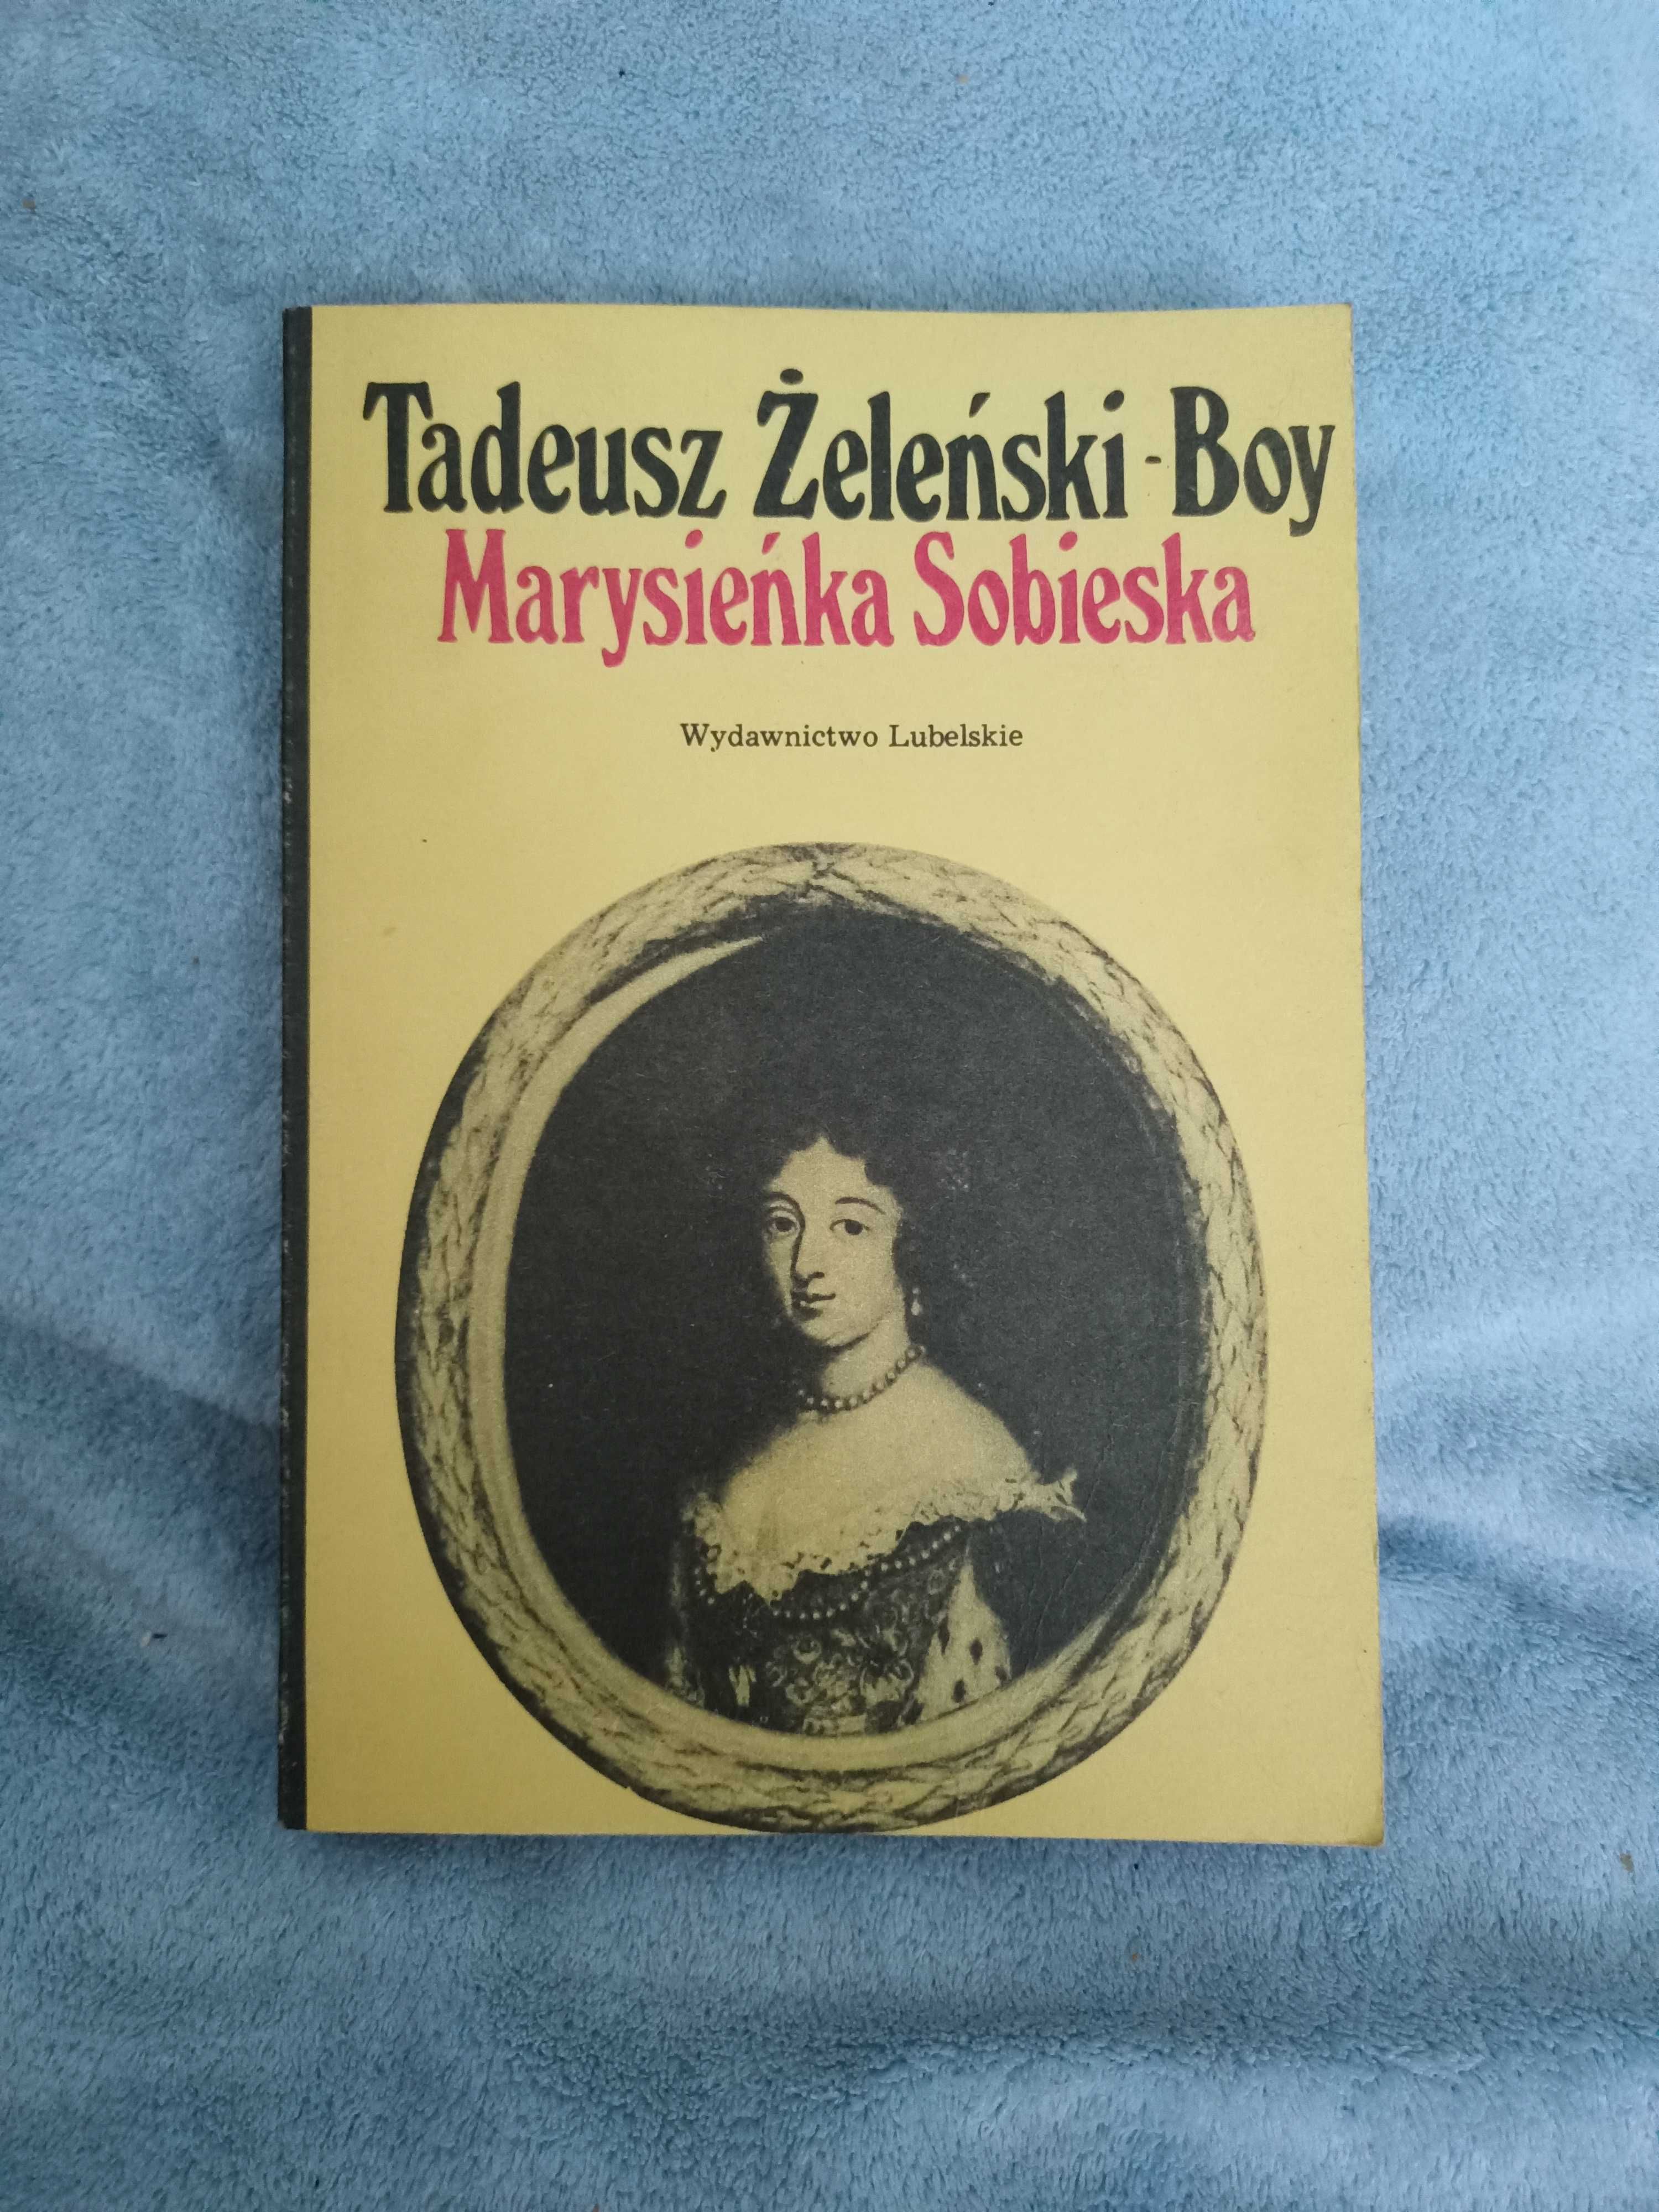 Marysieńka Sobieska - T. Żeleński - Boy.